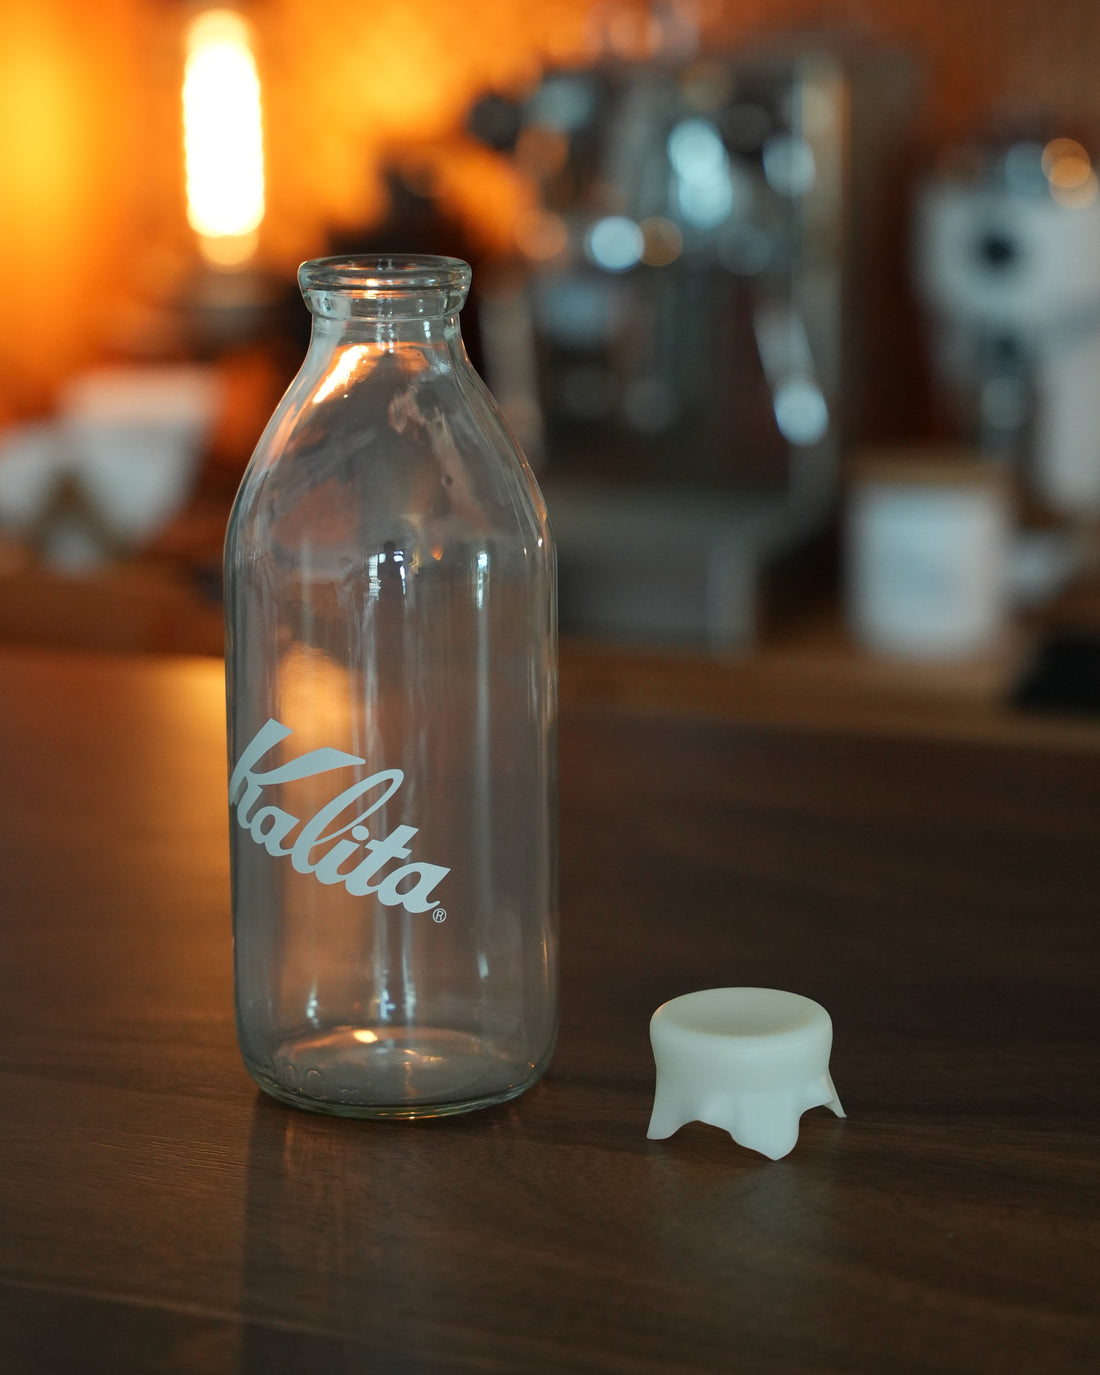 Kalita 玻璃牛奶瓶造型儲豆罐 320g - Coffee Stage 咖啡舞台